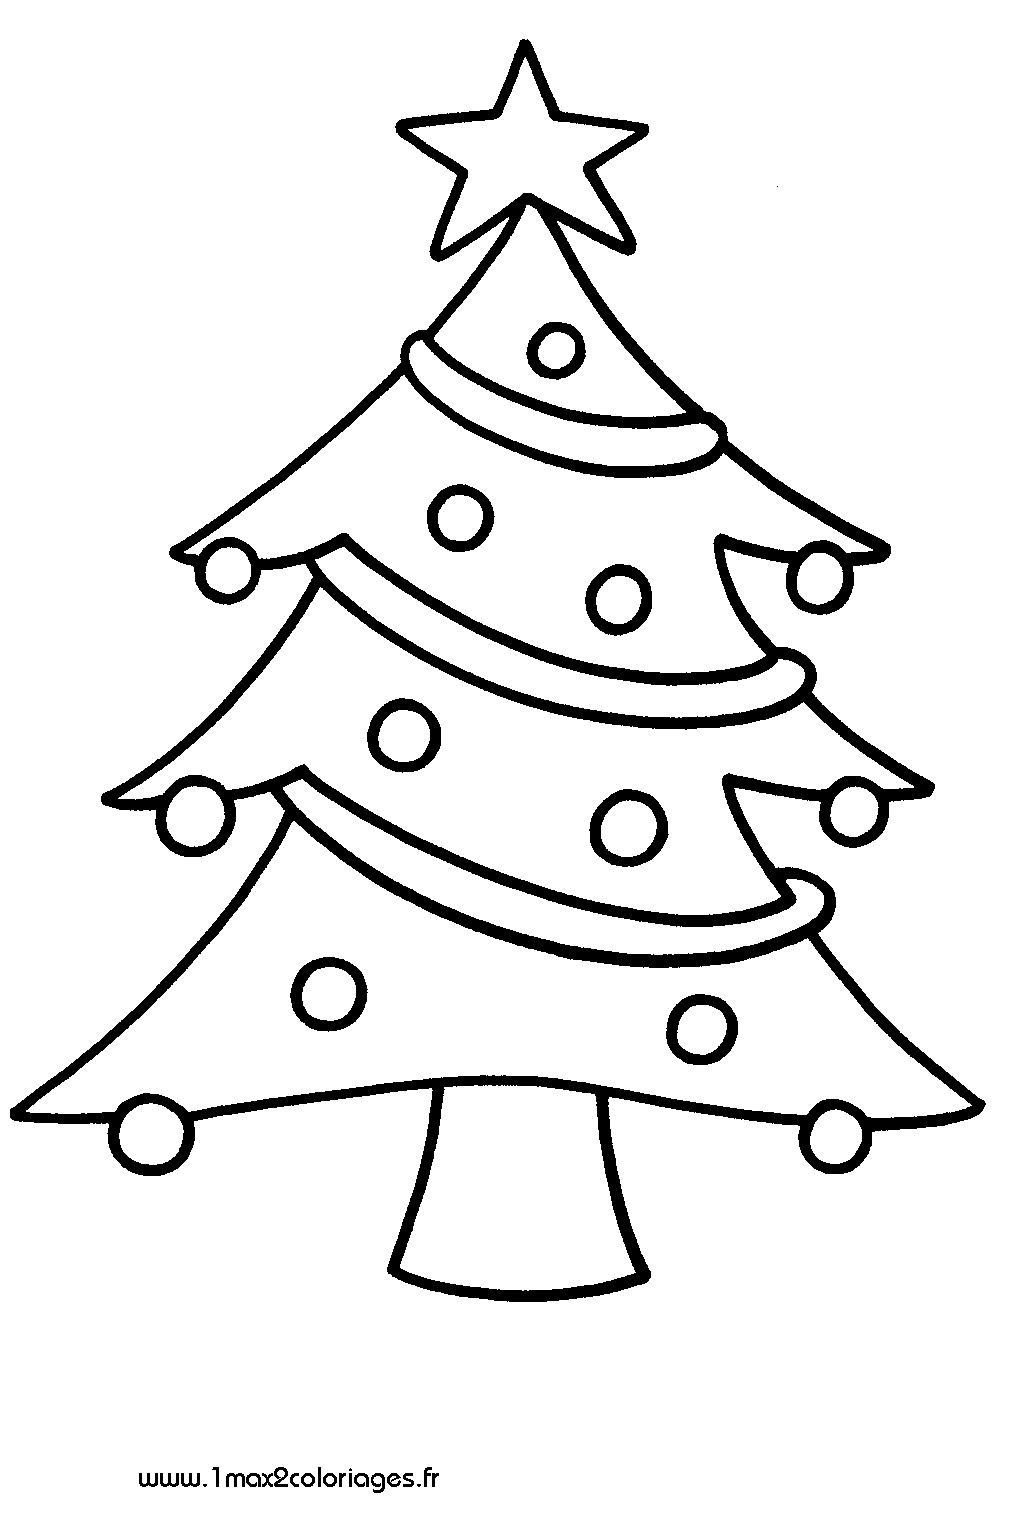 Coloriage Sapin de Noël #167436 (Objets) – Dessin à colorier